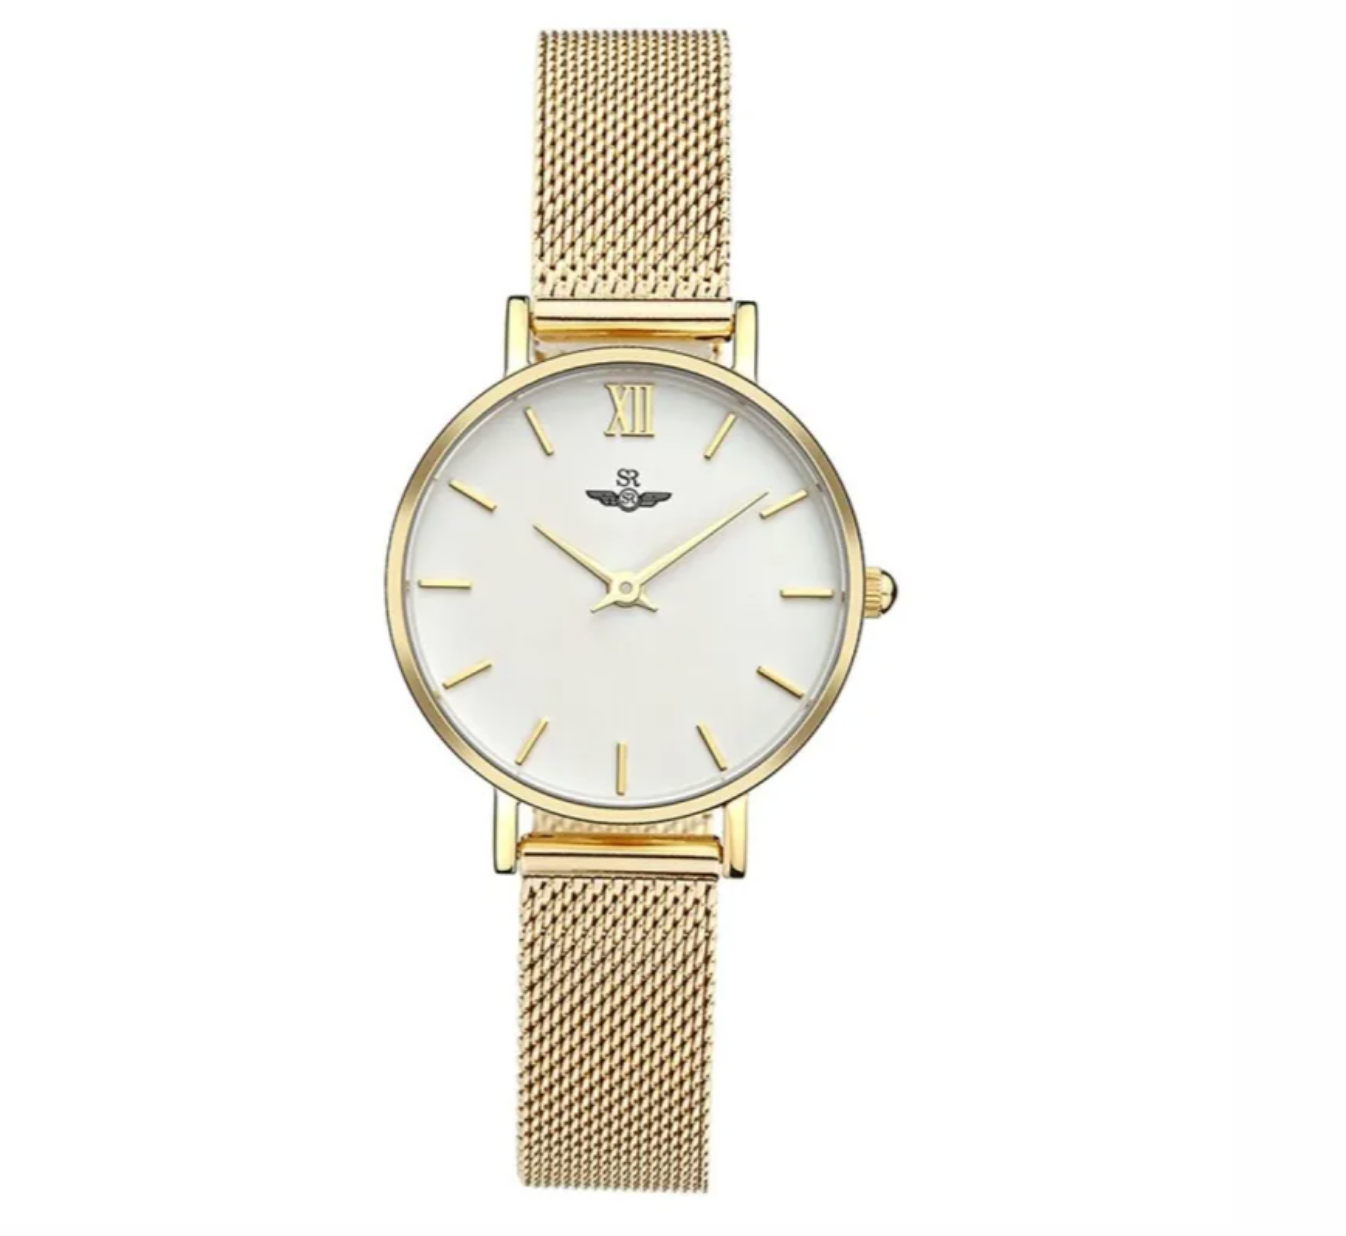  Đồng hồ nữ thời trang SRWatch - dây kim loại màu vàng - mặt đồng hồ 28mm SL1085.1402 